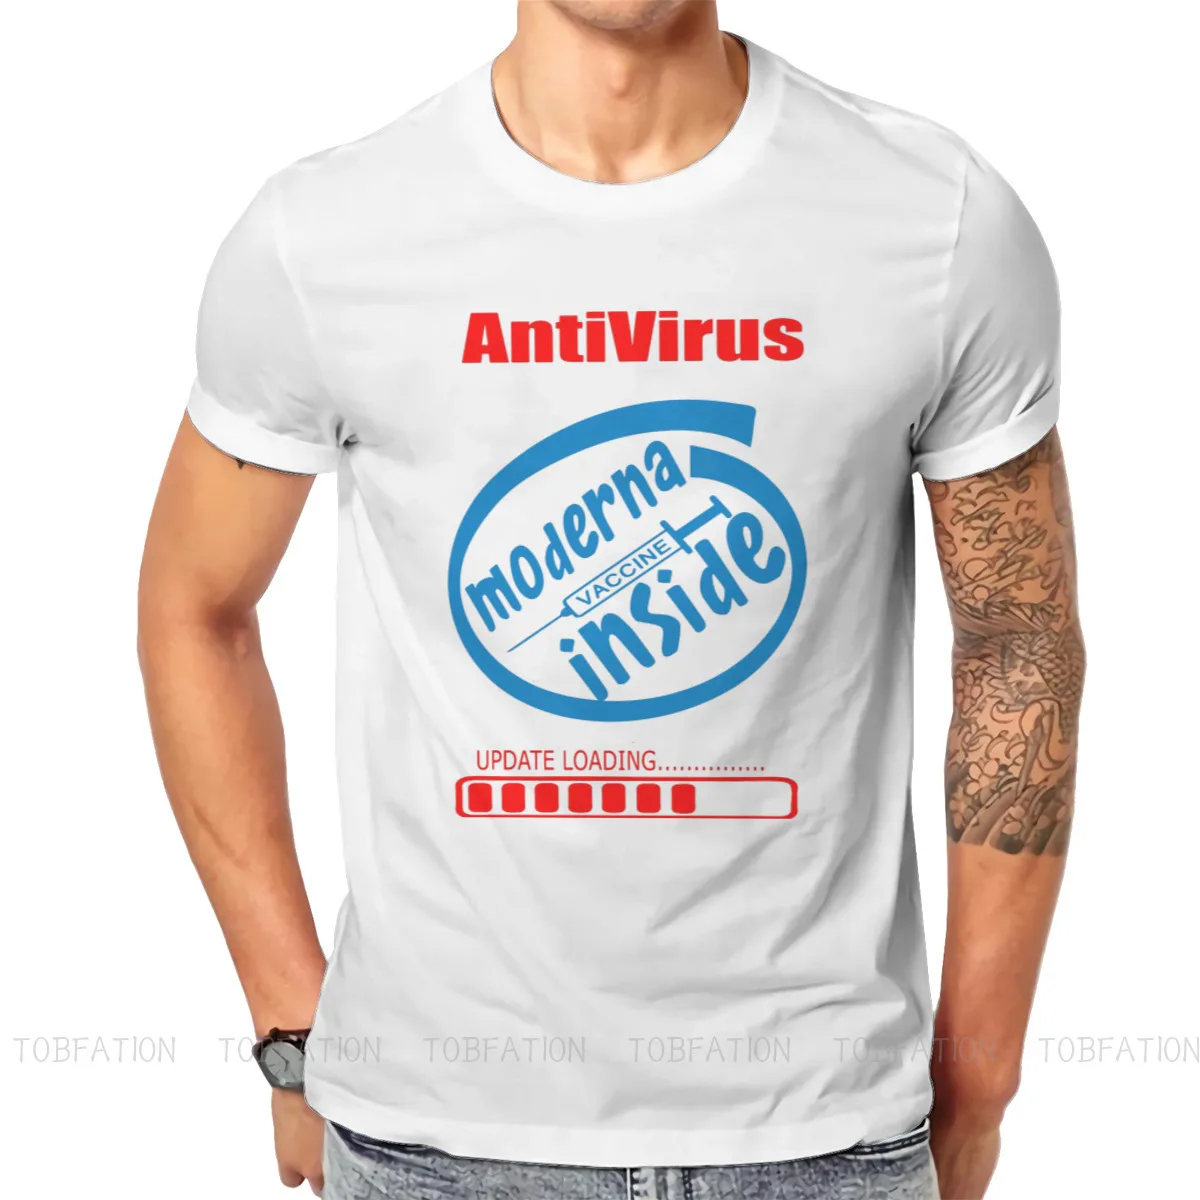 

ANTIVIRUS MODERNA INSIDE TShirt For Men Vaccine Meme Camisetas Novelty T Shirt Comfortable Print Loose